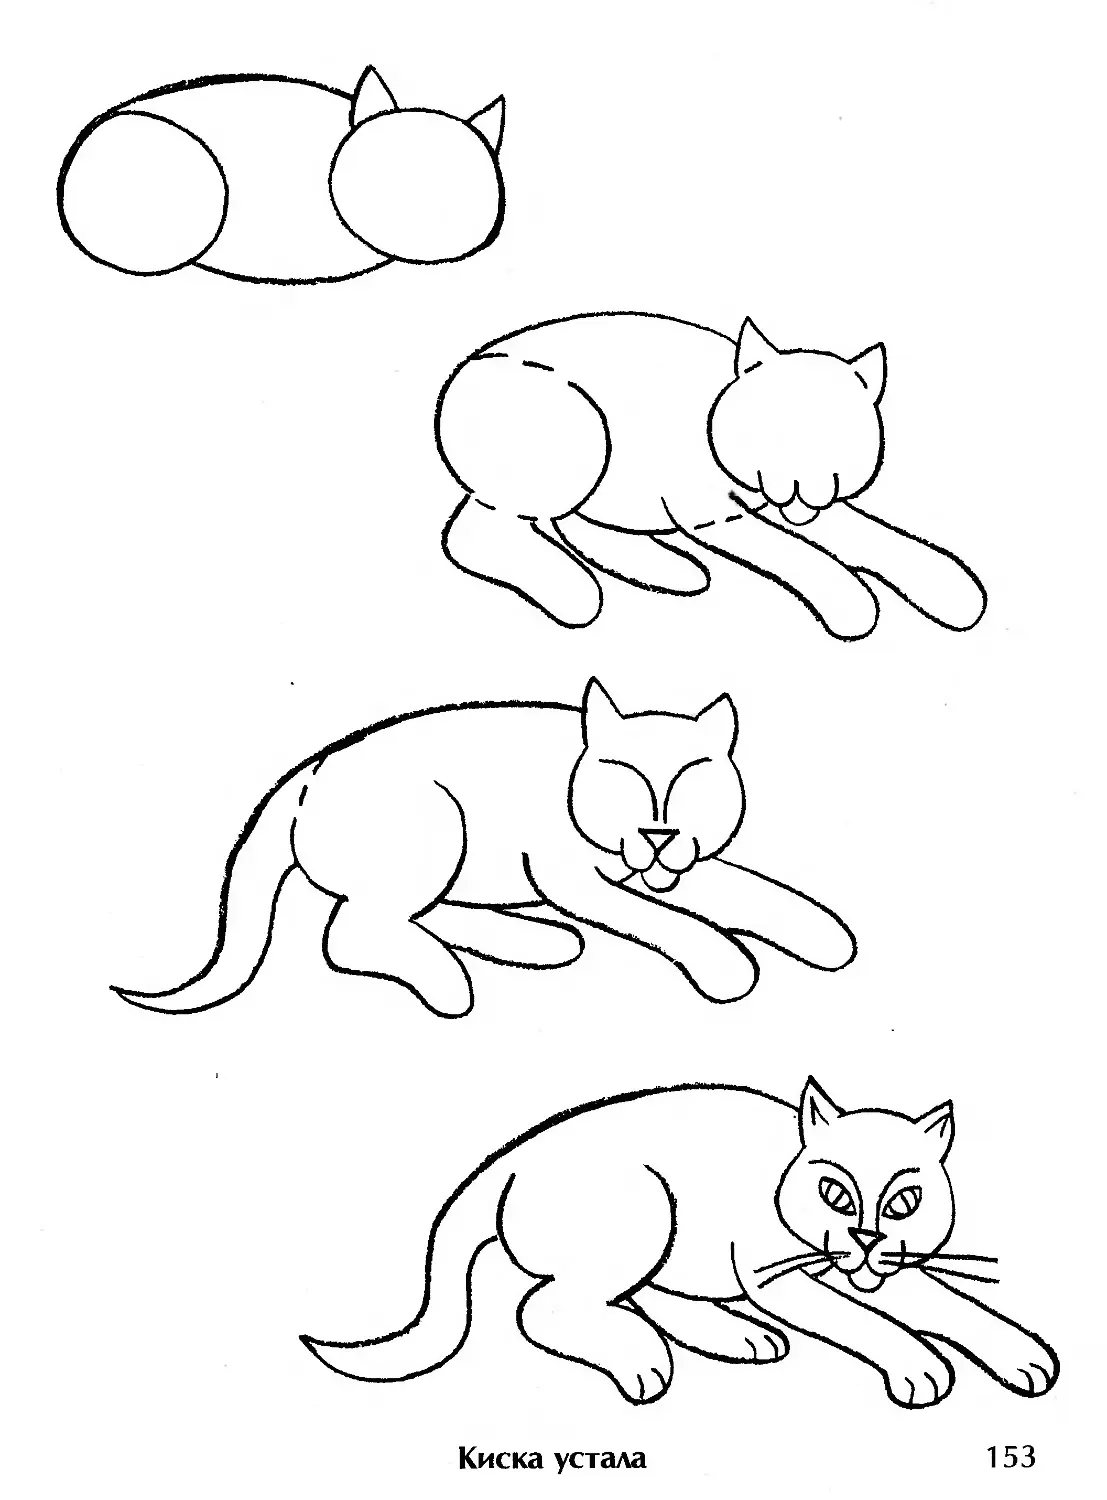 Рисунок кошки для детей карандашом срисовать